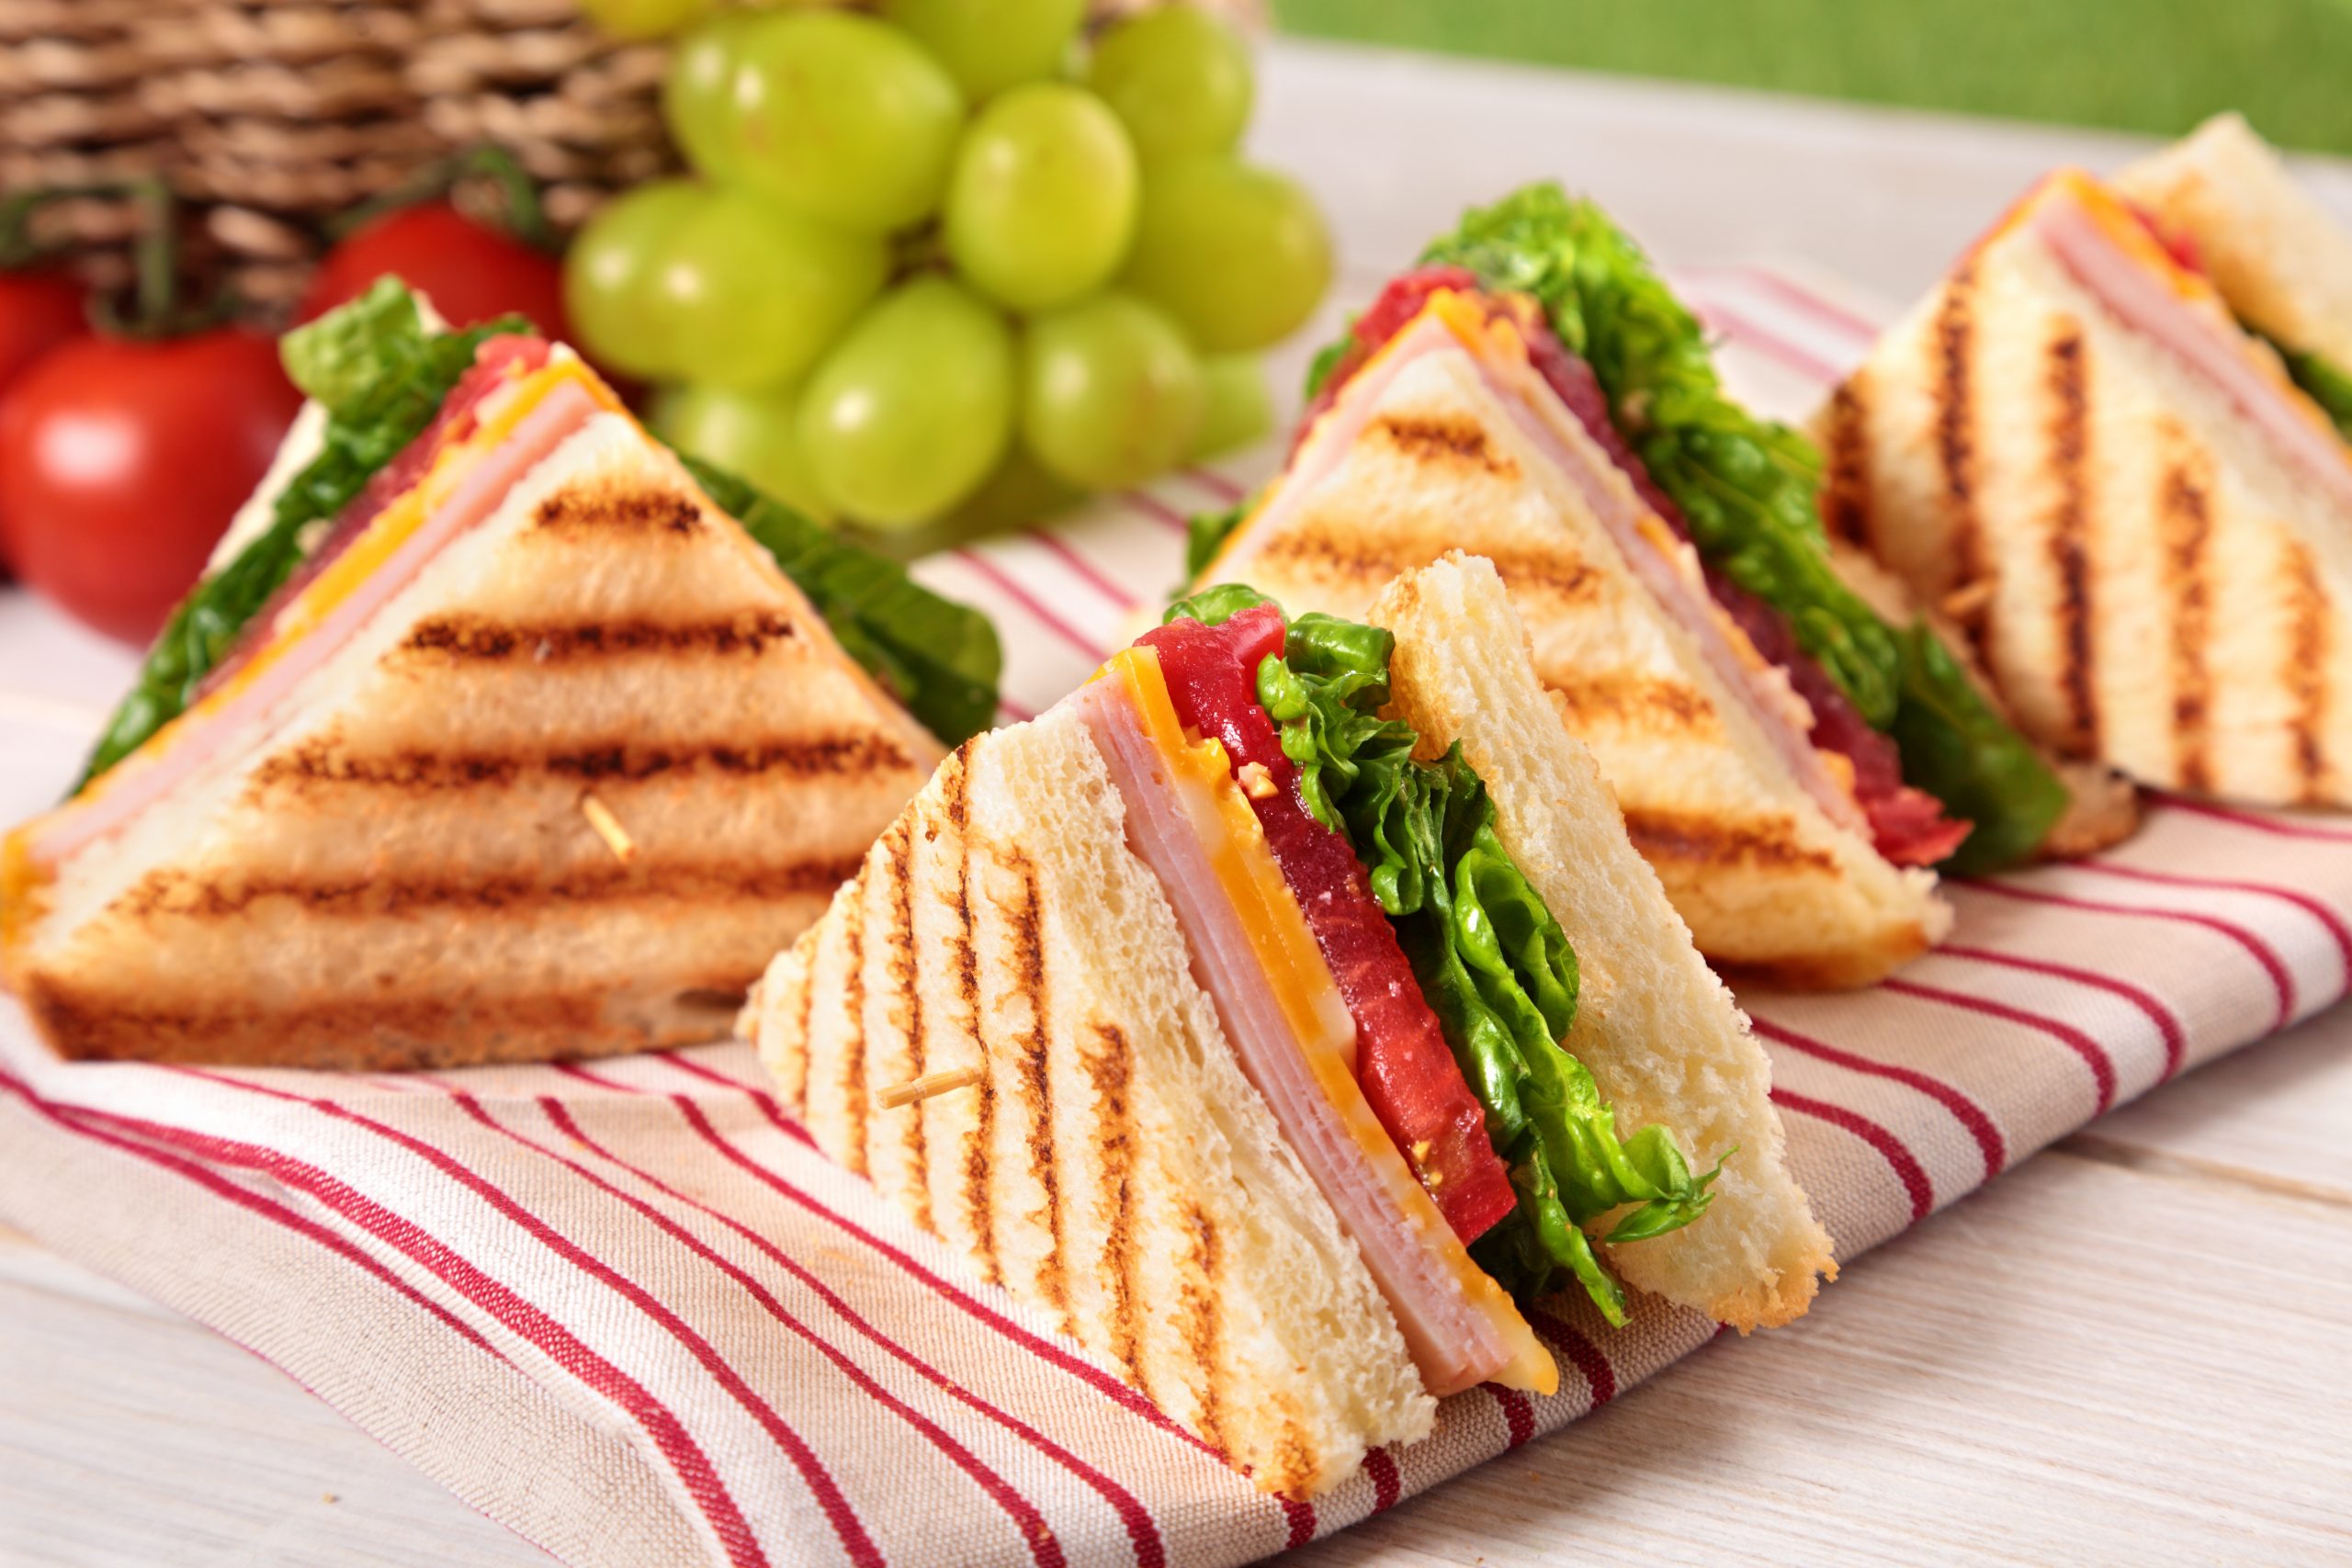 Sandwich camilan sehat untuk anak